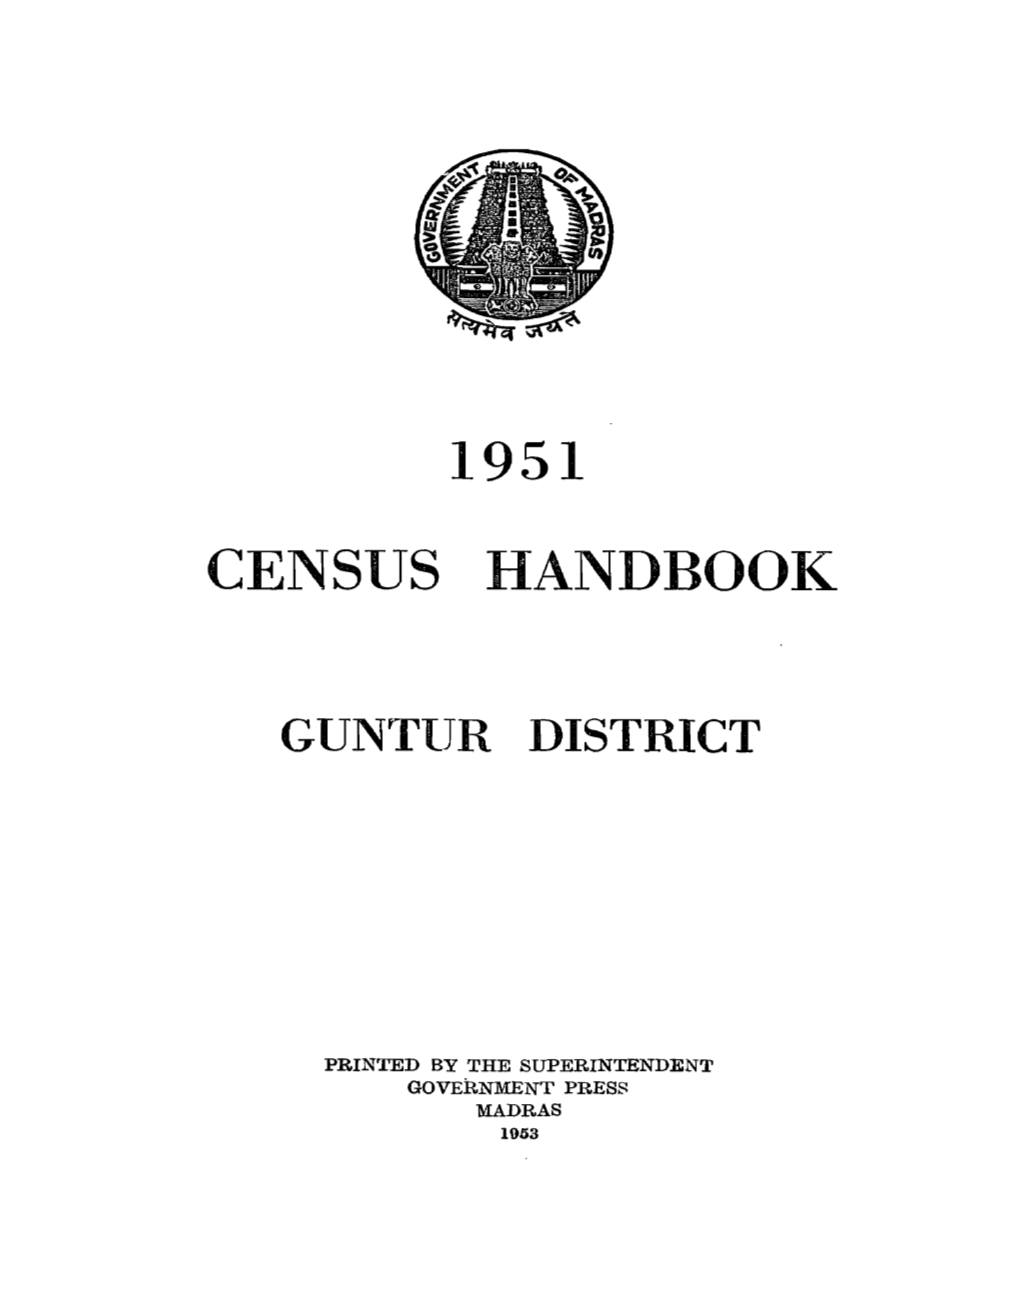 District Handbook, Guntur District ,Mysore